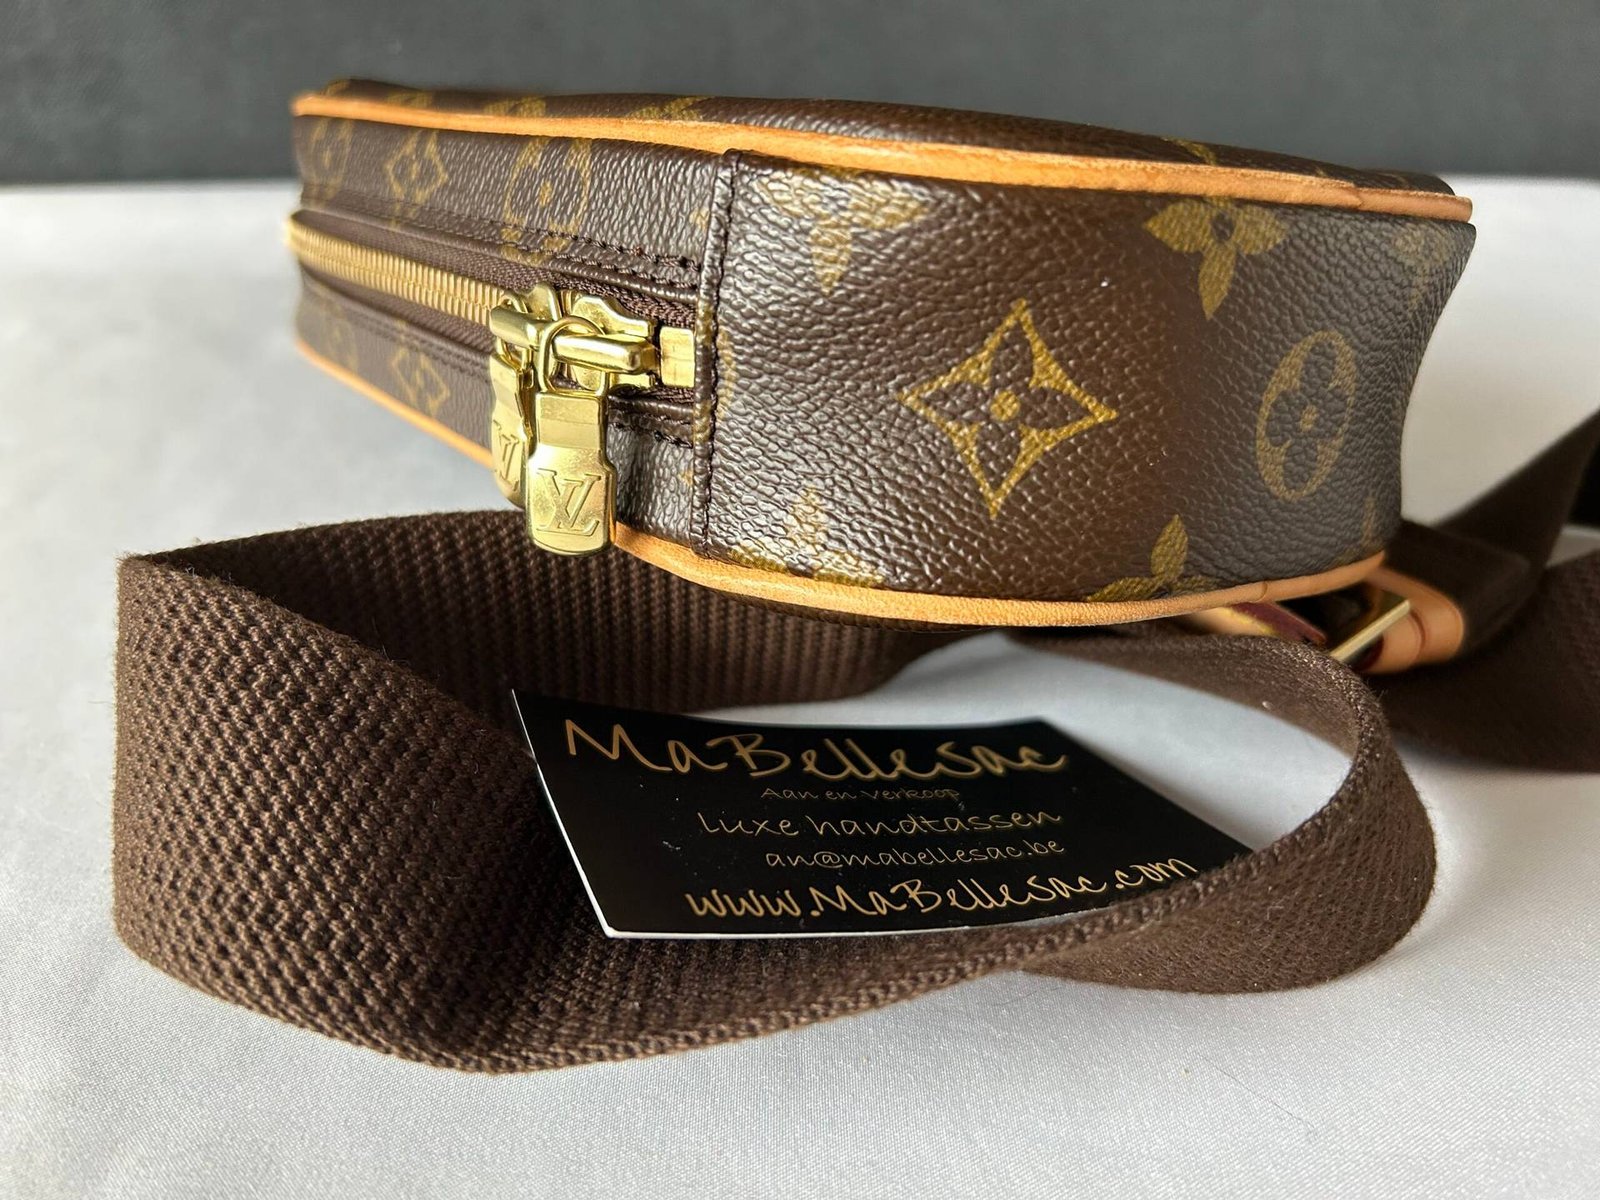 Louis Vuitton Danube Crossbody Bag - MaBelleSac